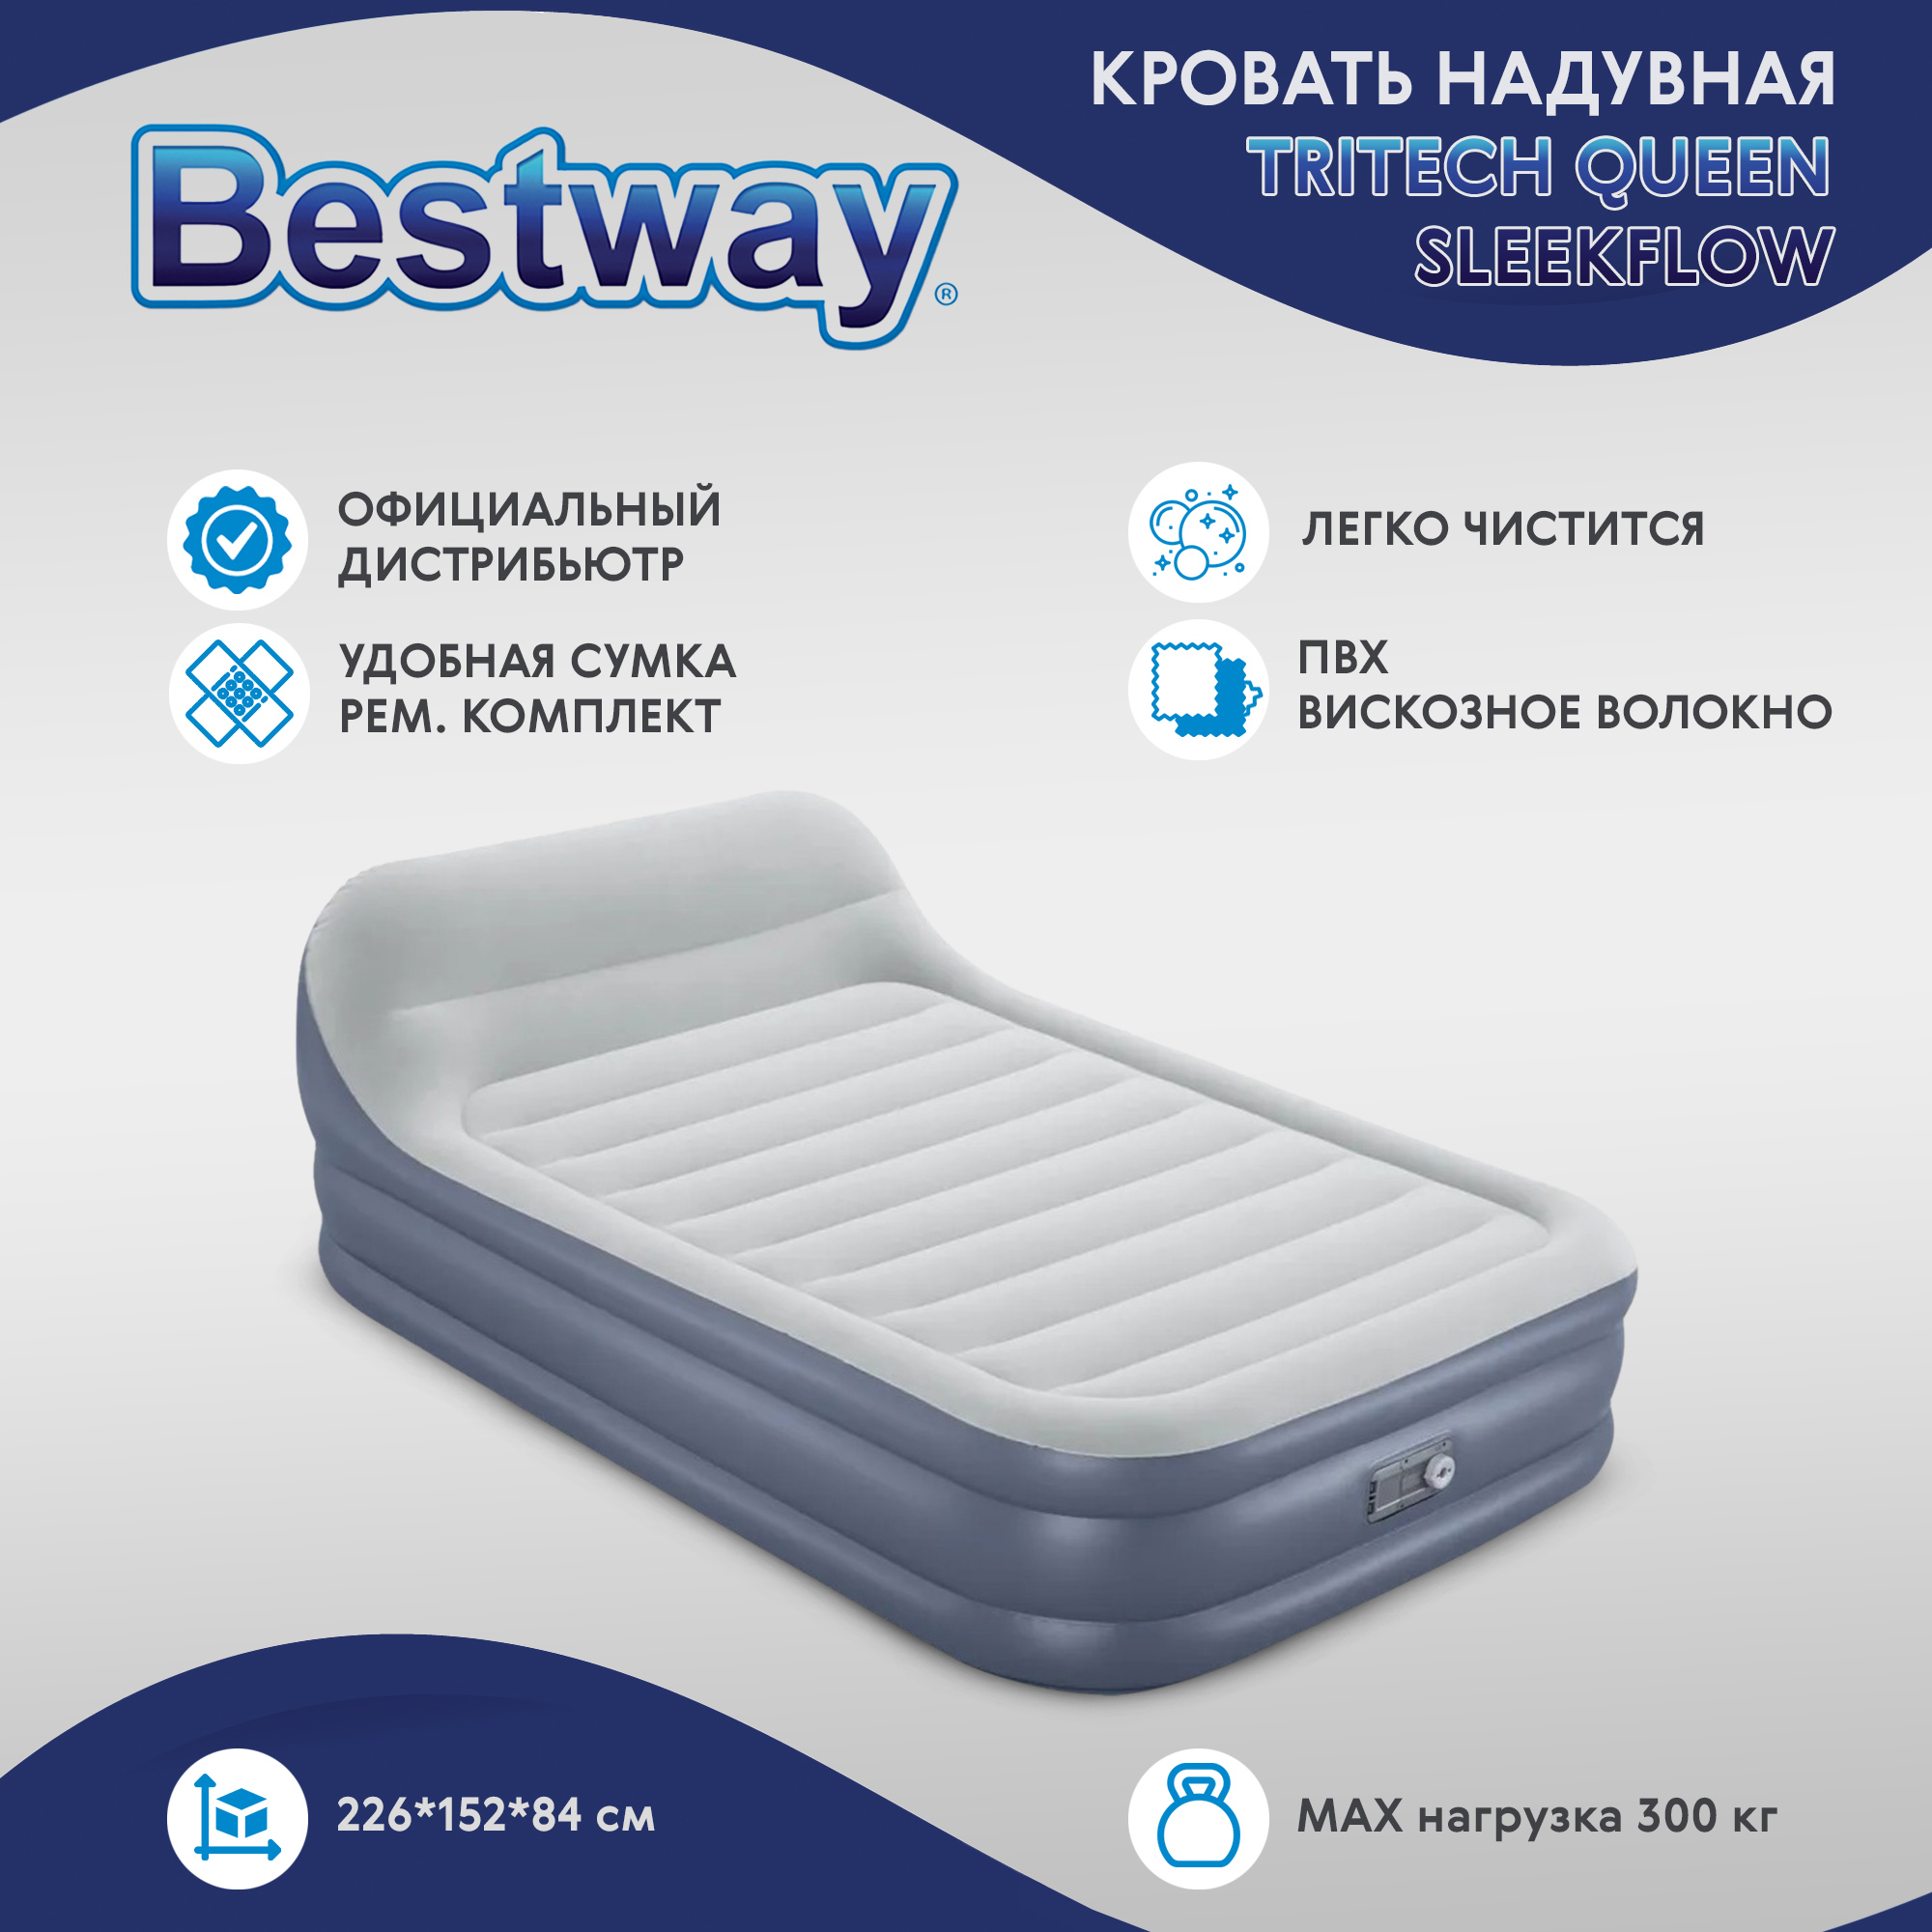 Кровать надувная Bestway 2,26x1,52x0,84 м (67923), цвет серый - фото 2